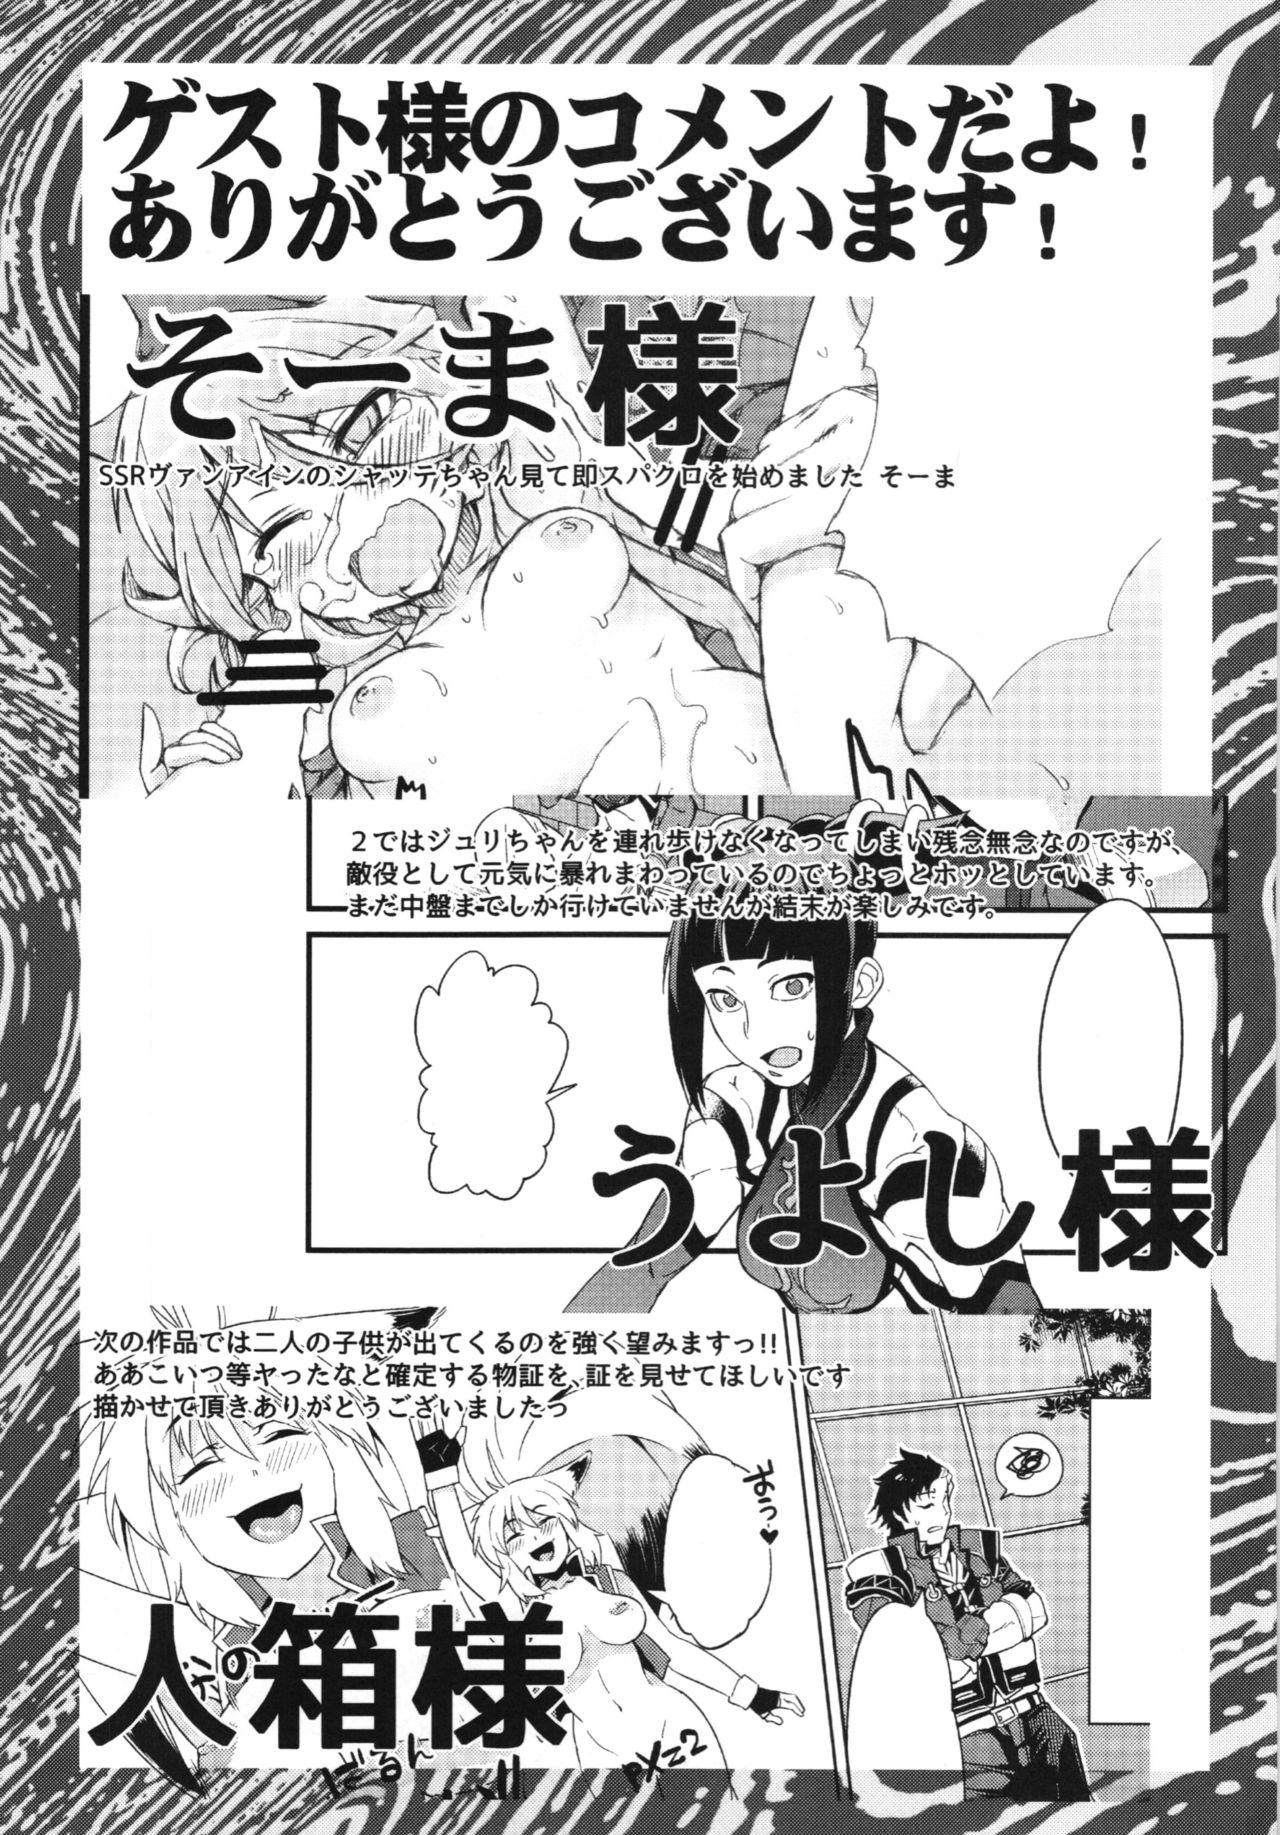 Police Boku no Watashi no Super Bobobbo Taisen BXΩZ - Super robot wars Domina - Page 139